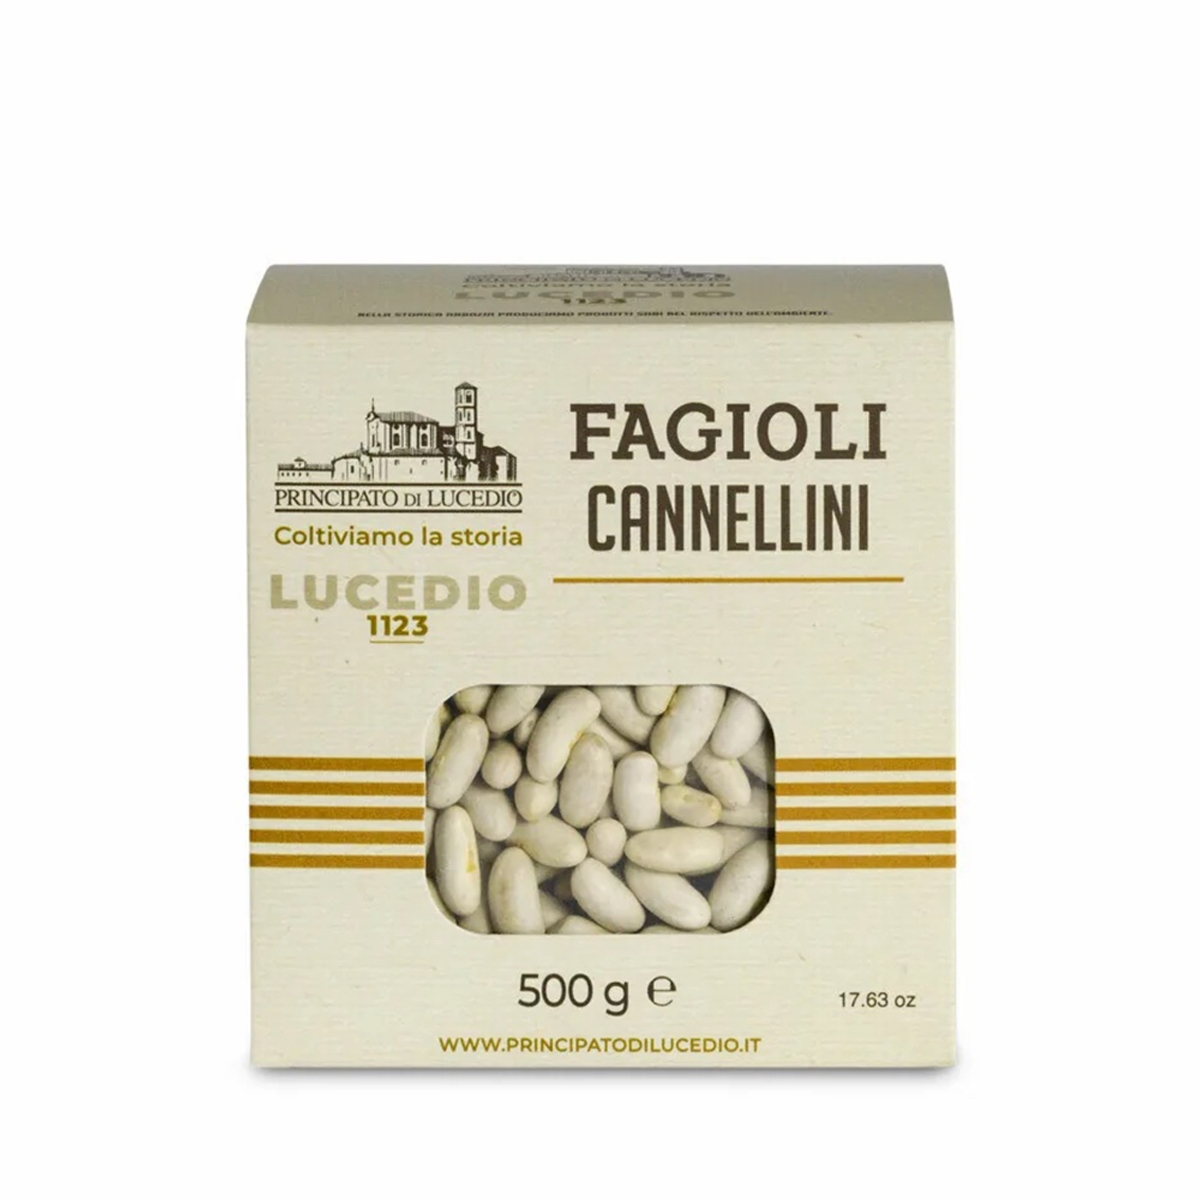 Fagioli Cannellini - 500 g - Confezionato in Atmosfera Protettiva e Astuccio di Cartone